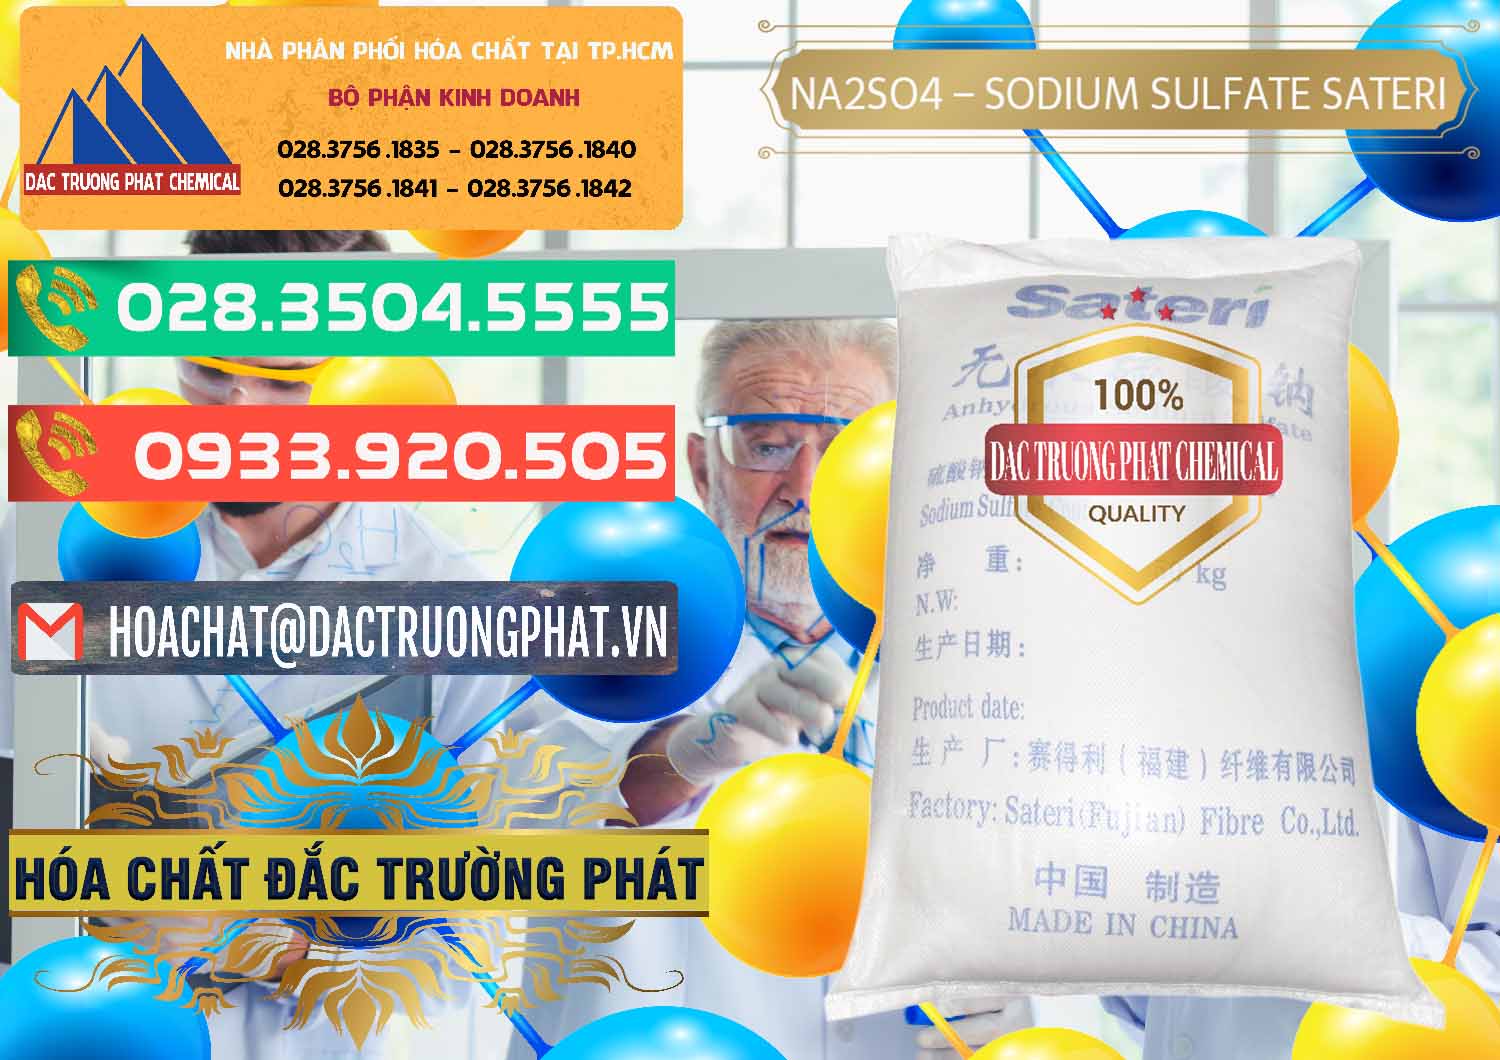 Cty chuyên kinh doanh ( bán ) Sodium Sulphate - Muối Sunfat Na2SO4 Sateri Trung Quốc China - 0100 - Công ty chuyên cung cấp - bán hóa chất tại TP.HCM - congtyhoachat.com.vn